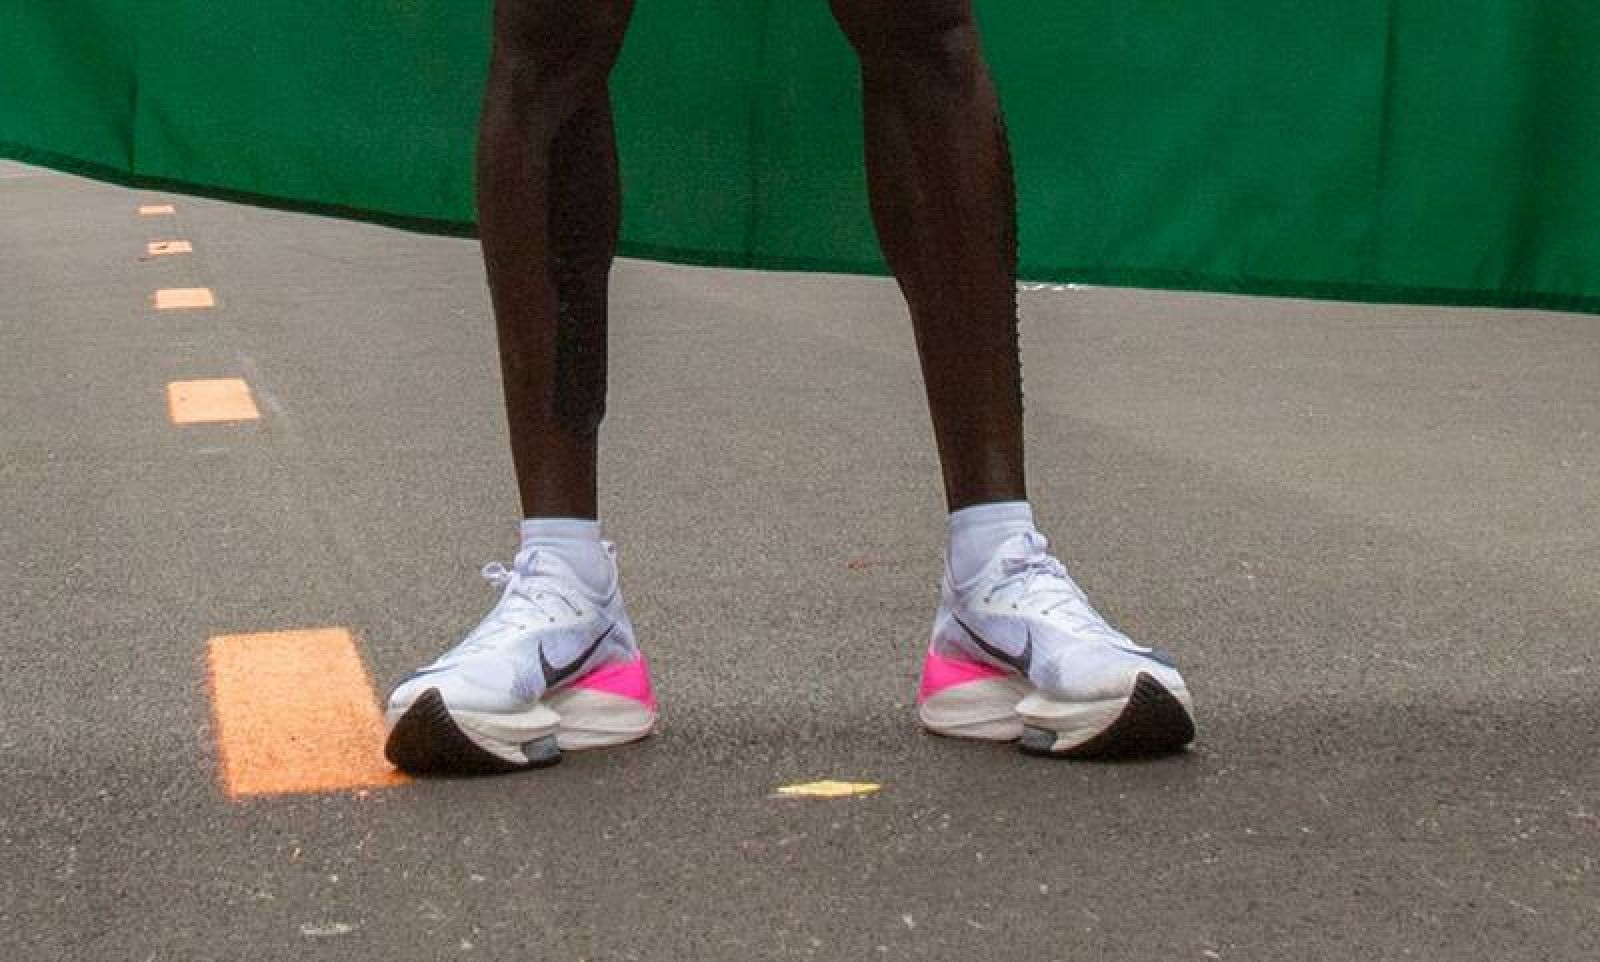 Maratón: Prohíben prototipos zapatillas el Kipchoge